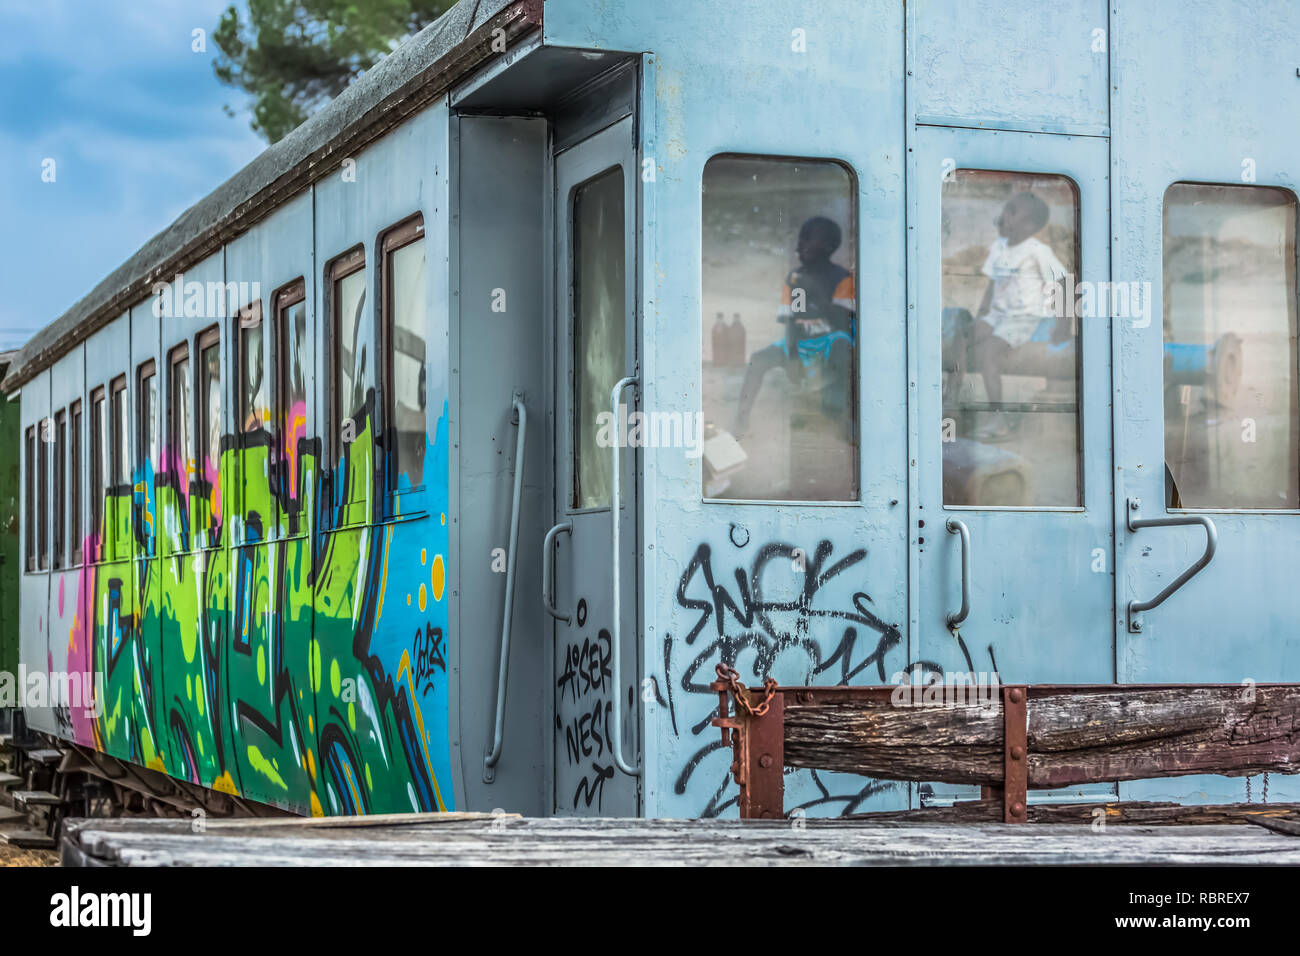 Viseu / Portugal - 10/02/2018 : vue d'un wagon abandonné avec graffiti street art et réflexion sur le verre des fenêtres enfants Banque D'Images